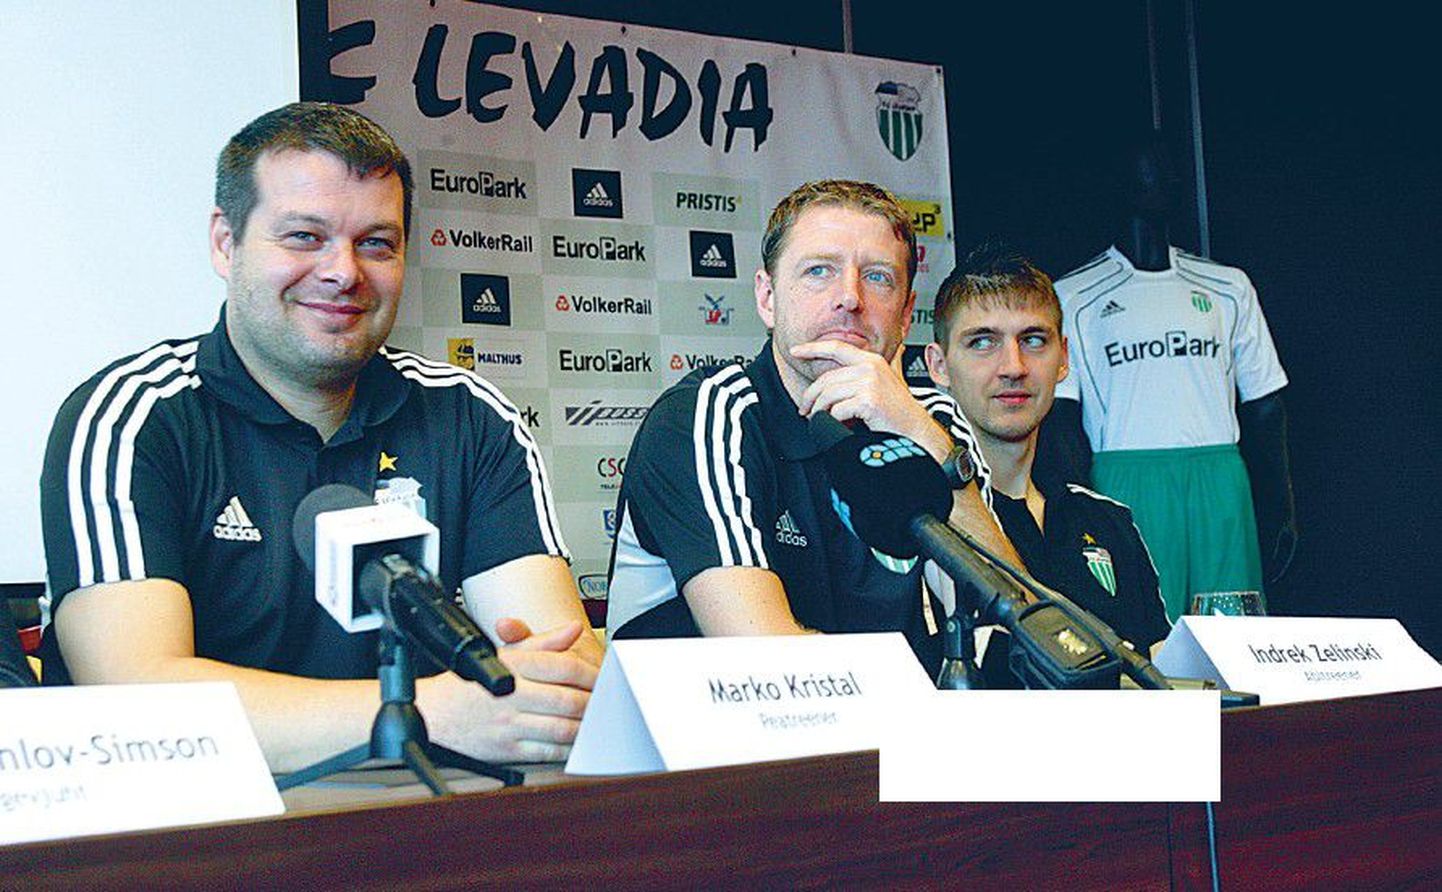 Главный тренер "Левадии" Марко Кристал (слева), второй тренер — Индрек Зелинский (в центре)и капитан команды Игорь Морозов.